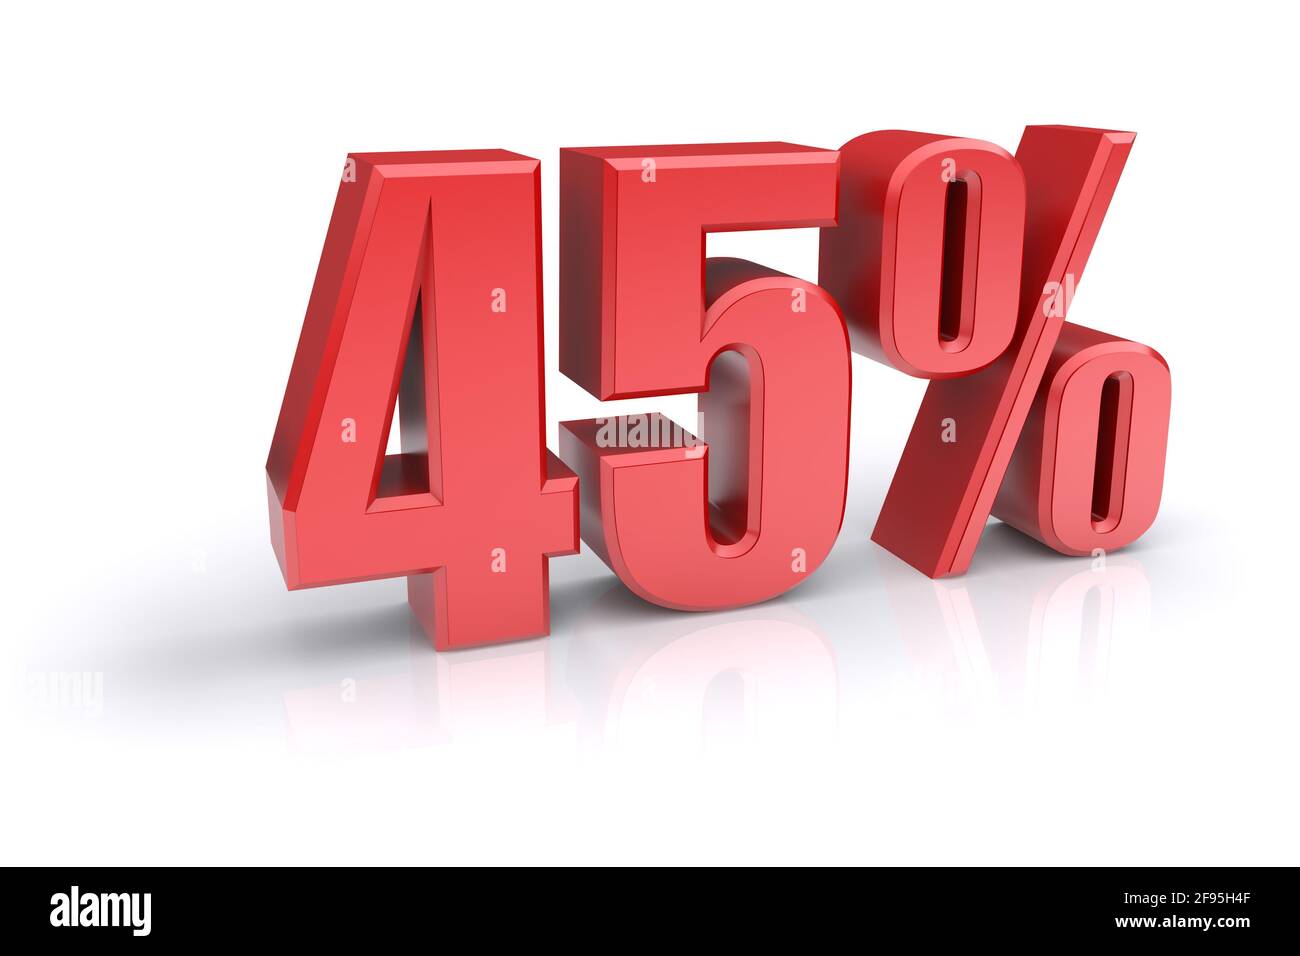 Icona rossa del tasso percentuale del 45% su sfondo bianco. immagine 3d rappresentata Foto Stock